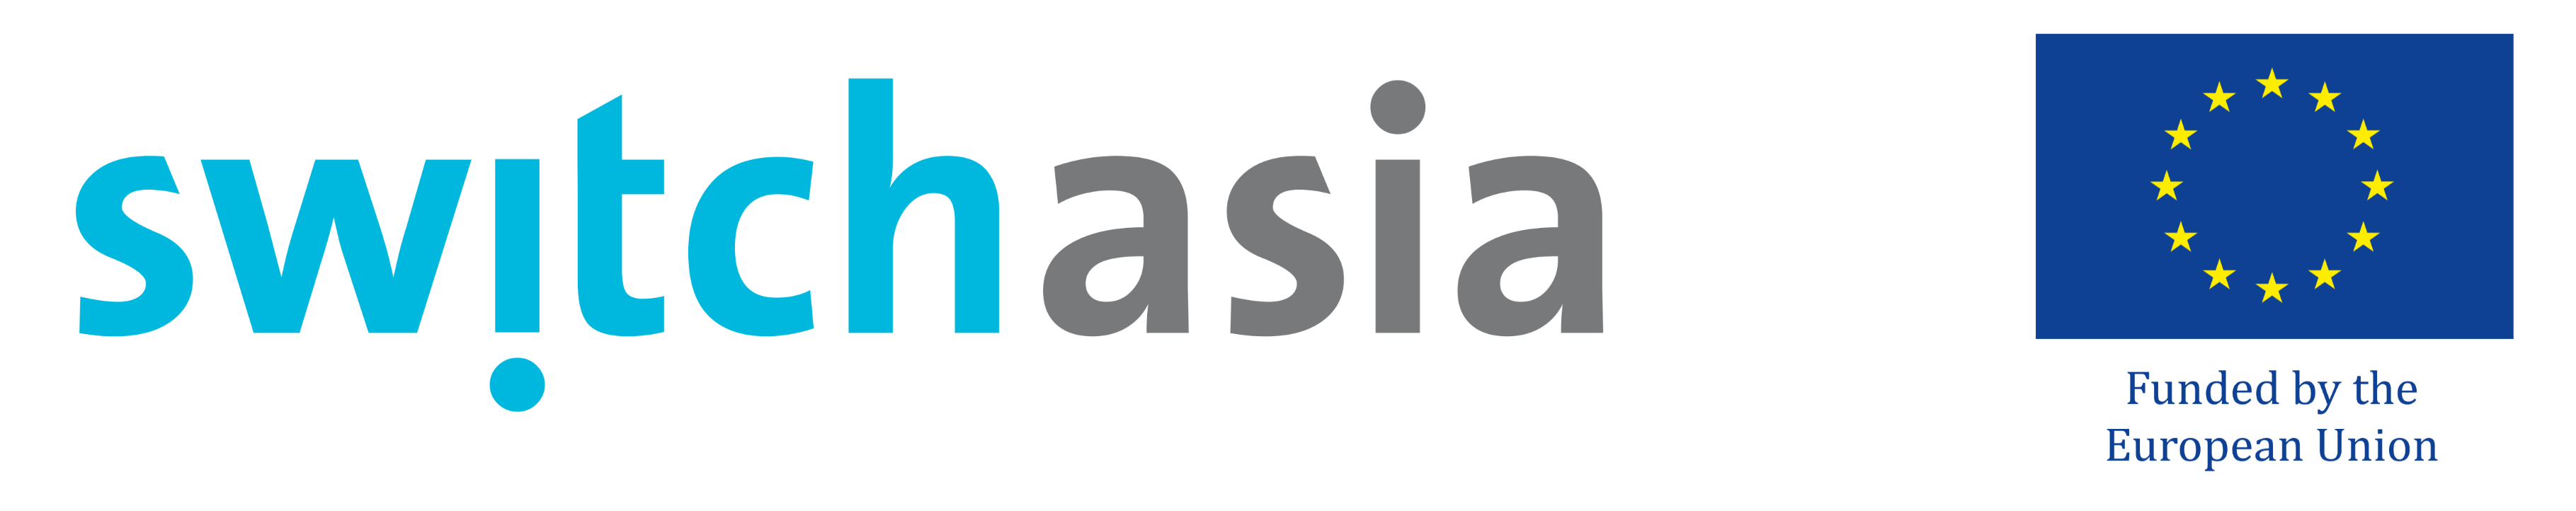 SWITCH Asia logo